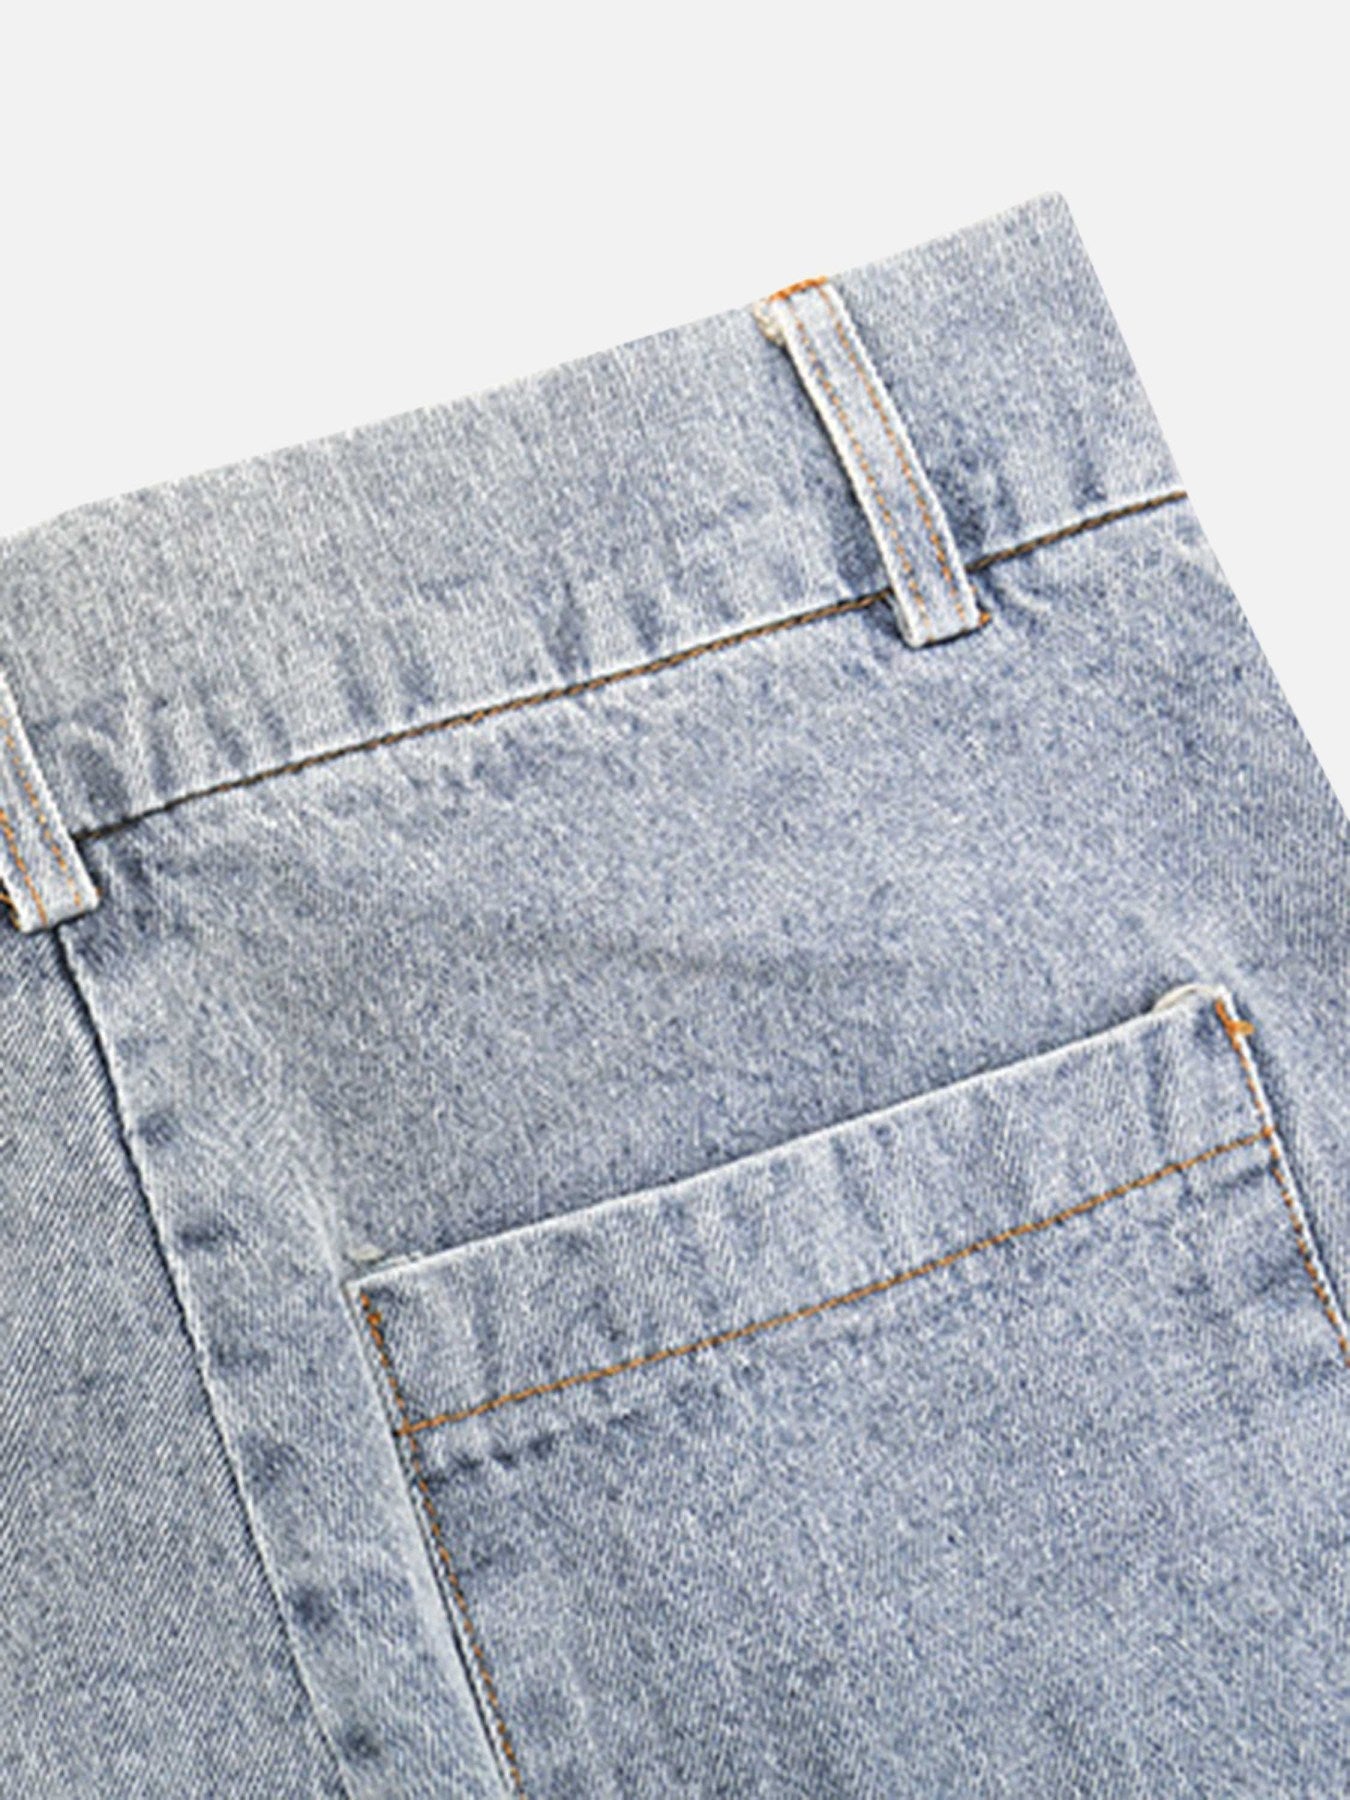 The Supermade Torn Side Straps Design Sense Jeans